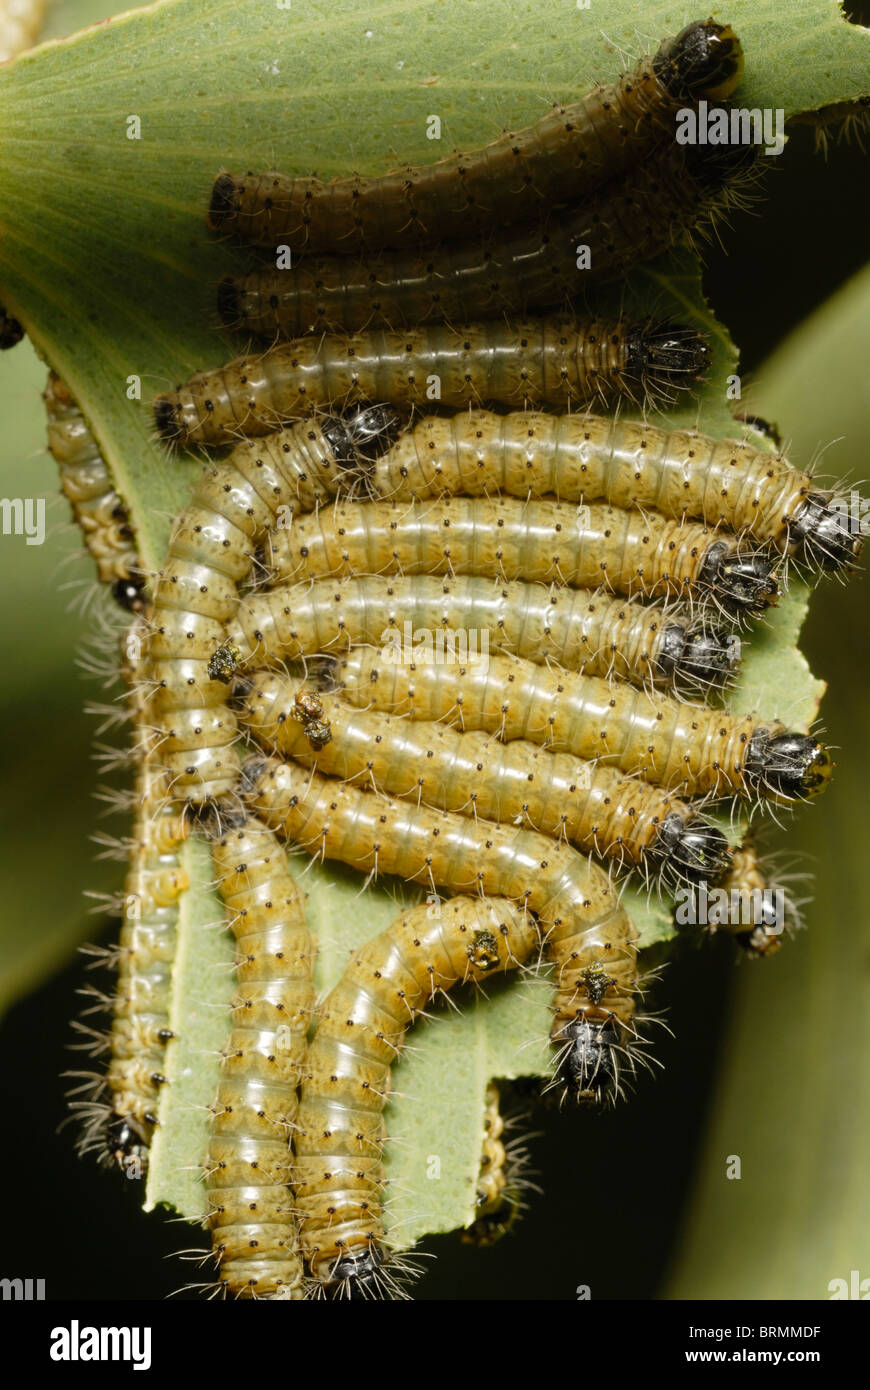 Los gusanos Mopane amarilla jóvenes alimentándose de una hoja mopane Foto de stock